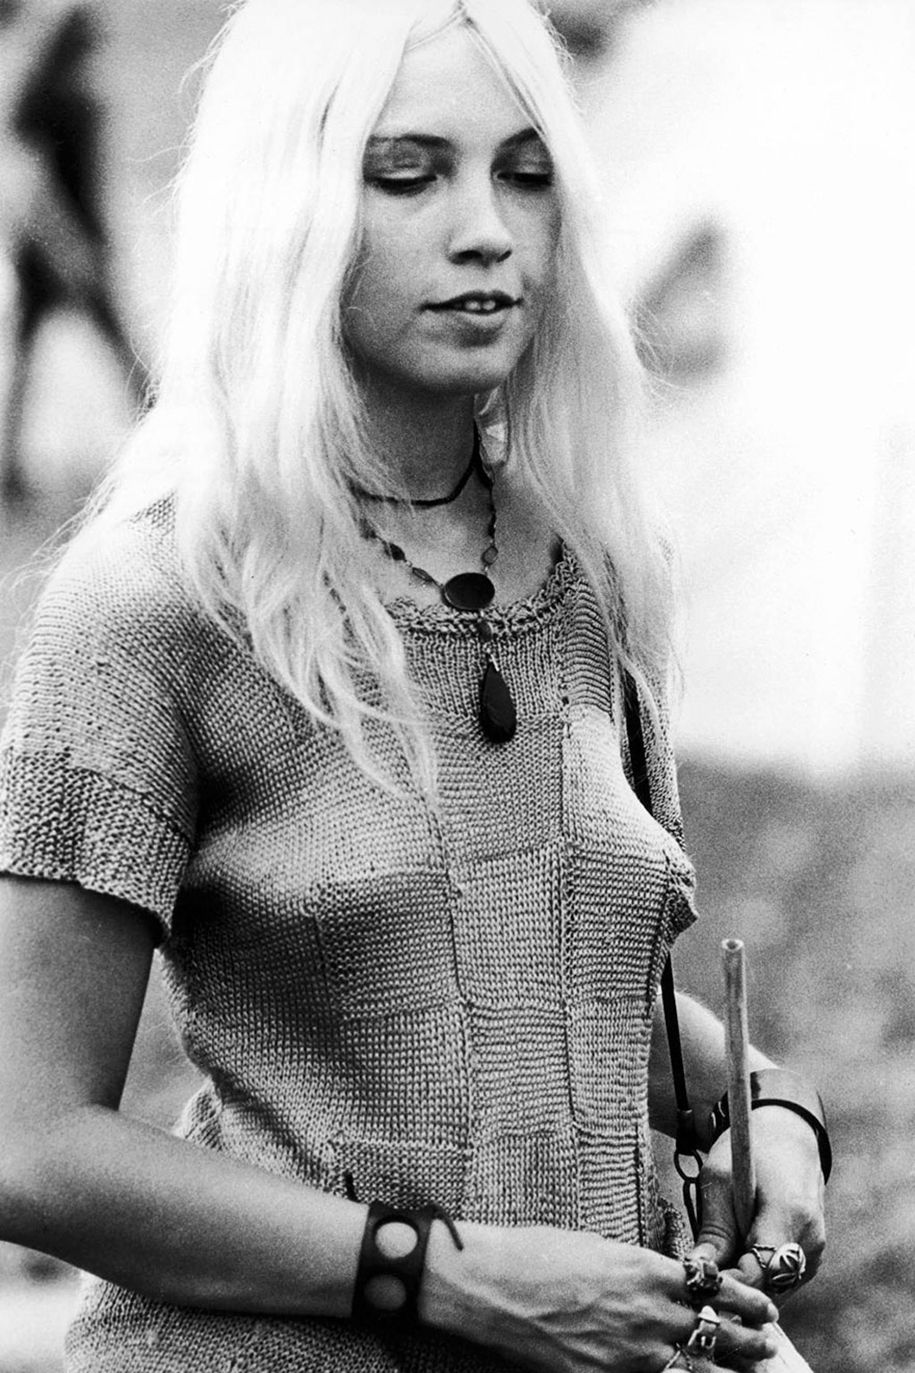 női-60-as évek-woodstock-divat-1969-8